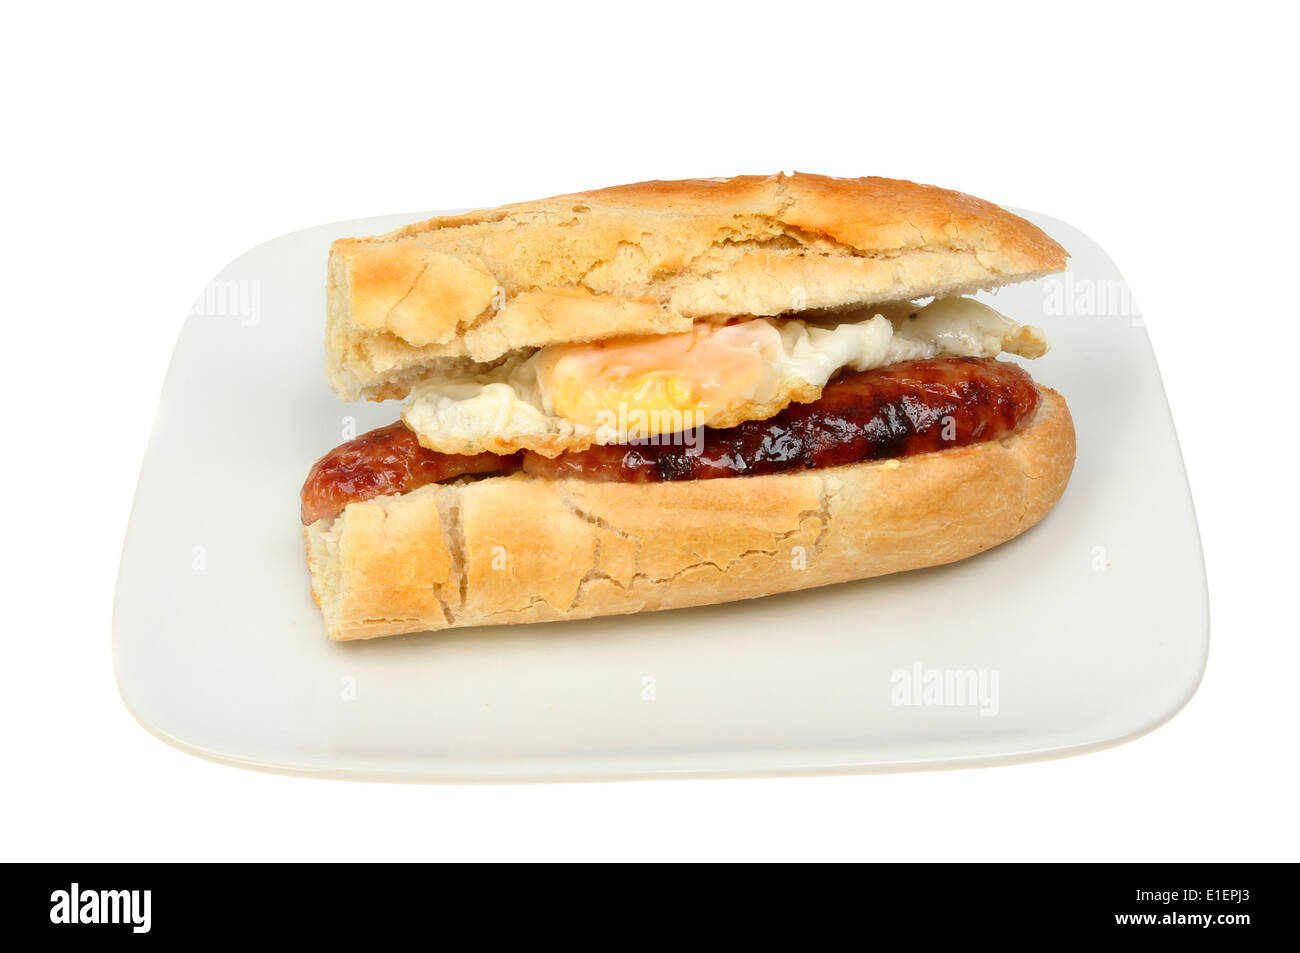 Huevo frito y salchicha baguette en una placa aislada contra un blanco Foto de stock